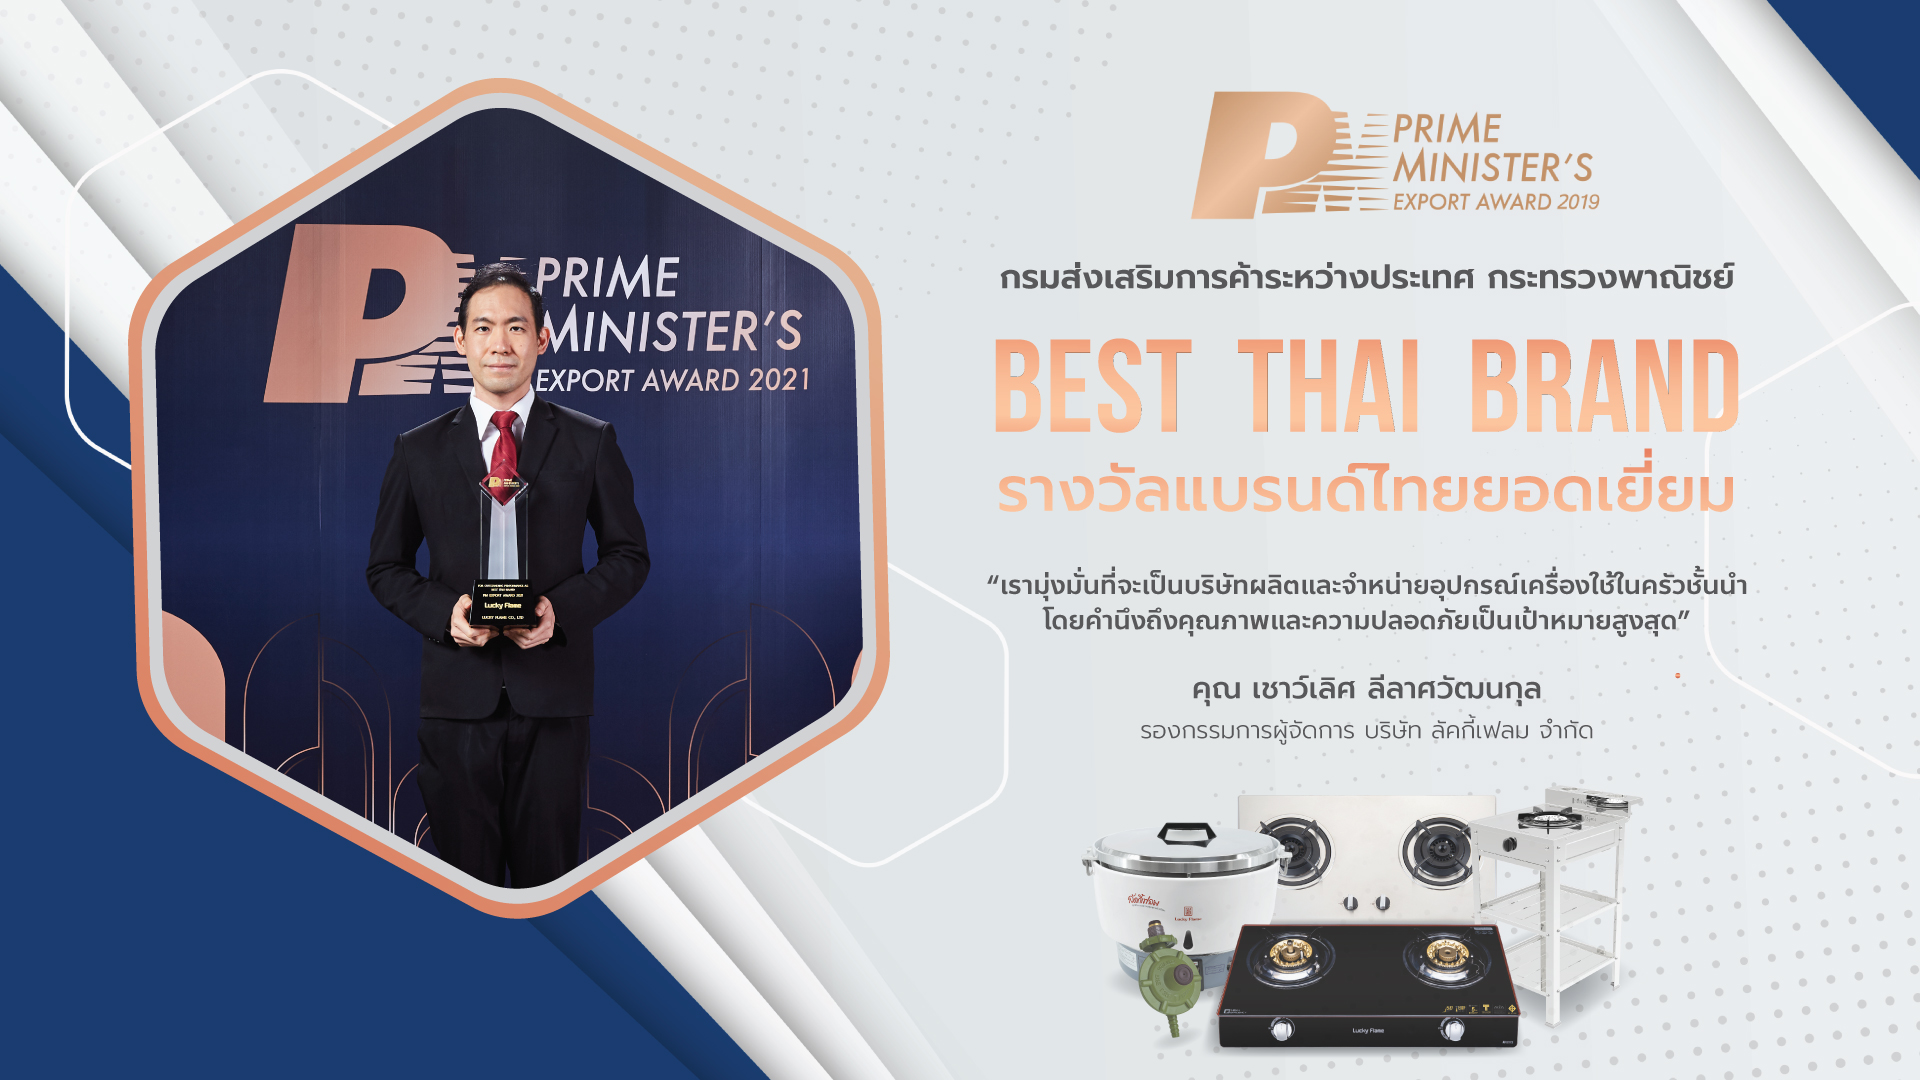 ลัคกี้เฟลม คว้ารางวัล “PM Export Award 2021” แบรนด์ไทยยอดเยี่ยม สะท้อนคุณภาพมาตรฐานส่งออก จุดประกายความสุขไม่หยุดยั้ง